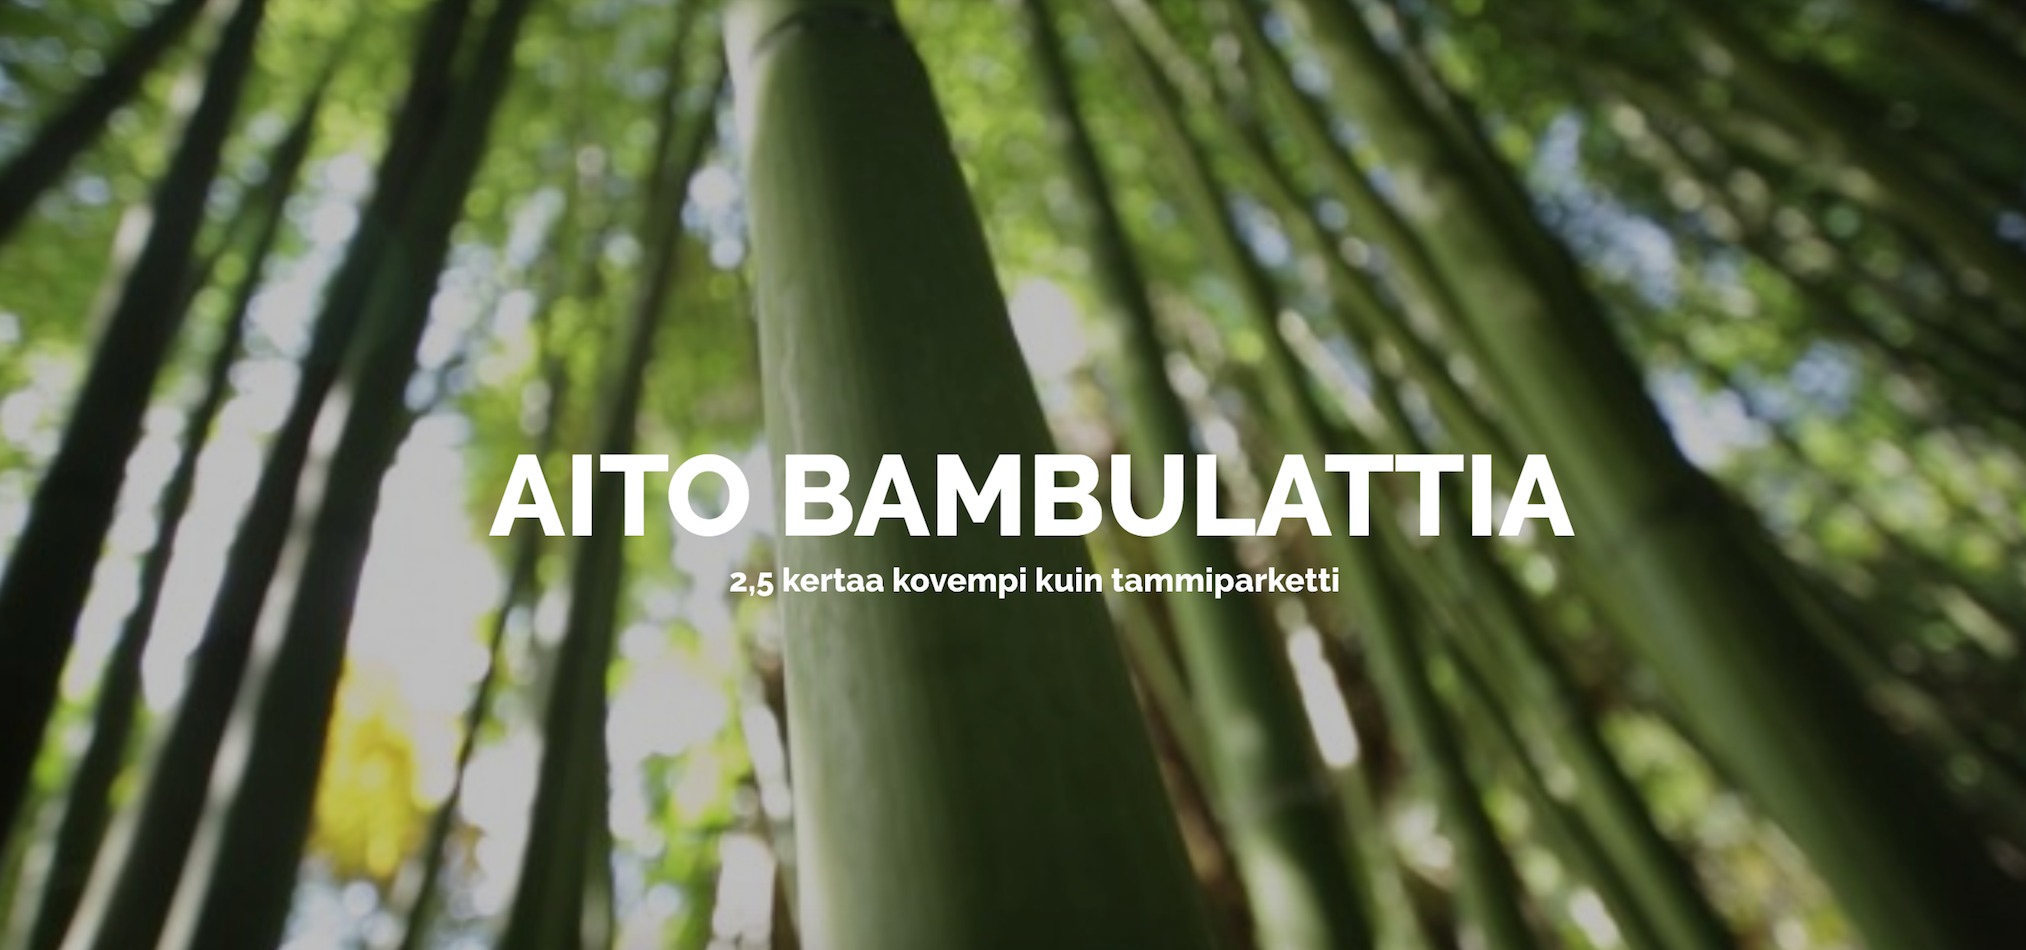 Ekologinen ja kestävä bambulattia